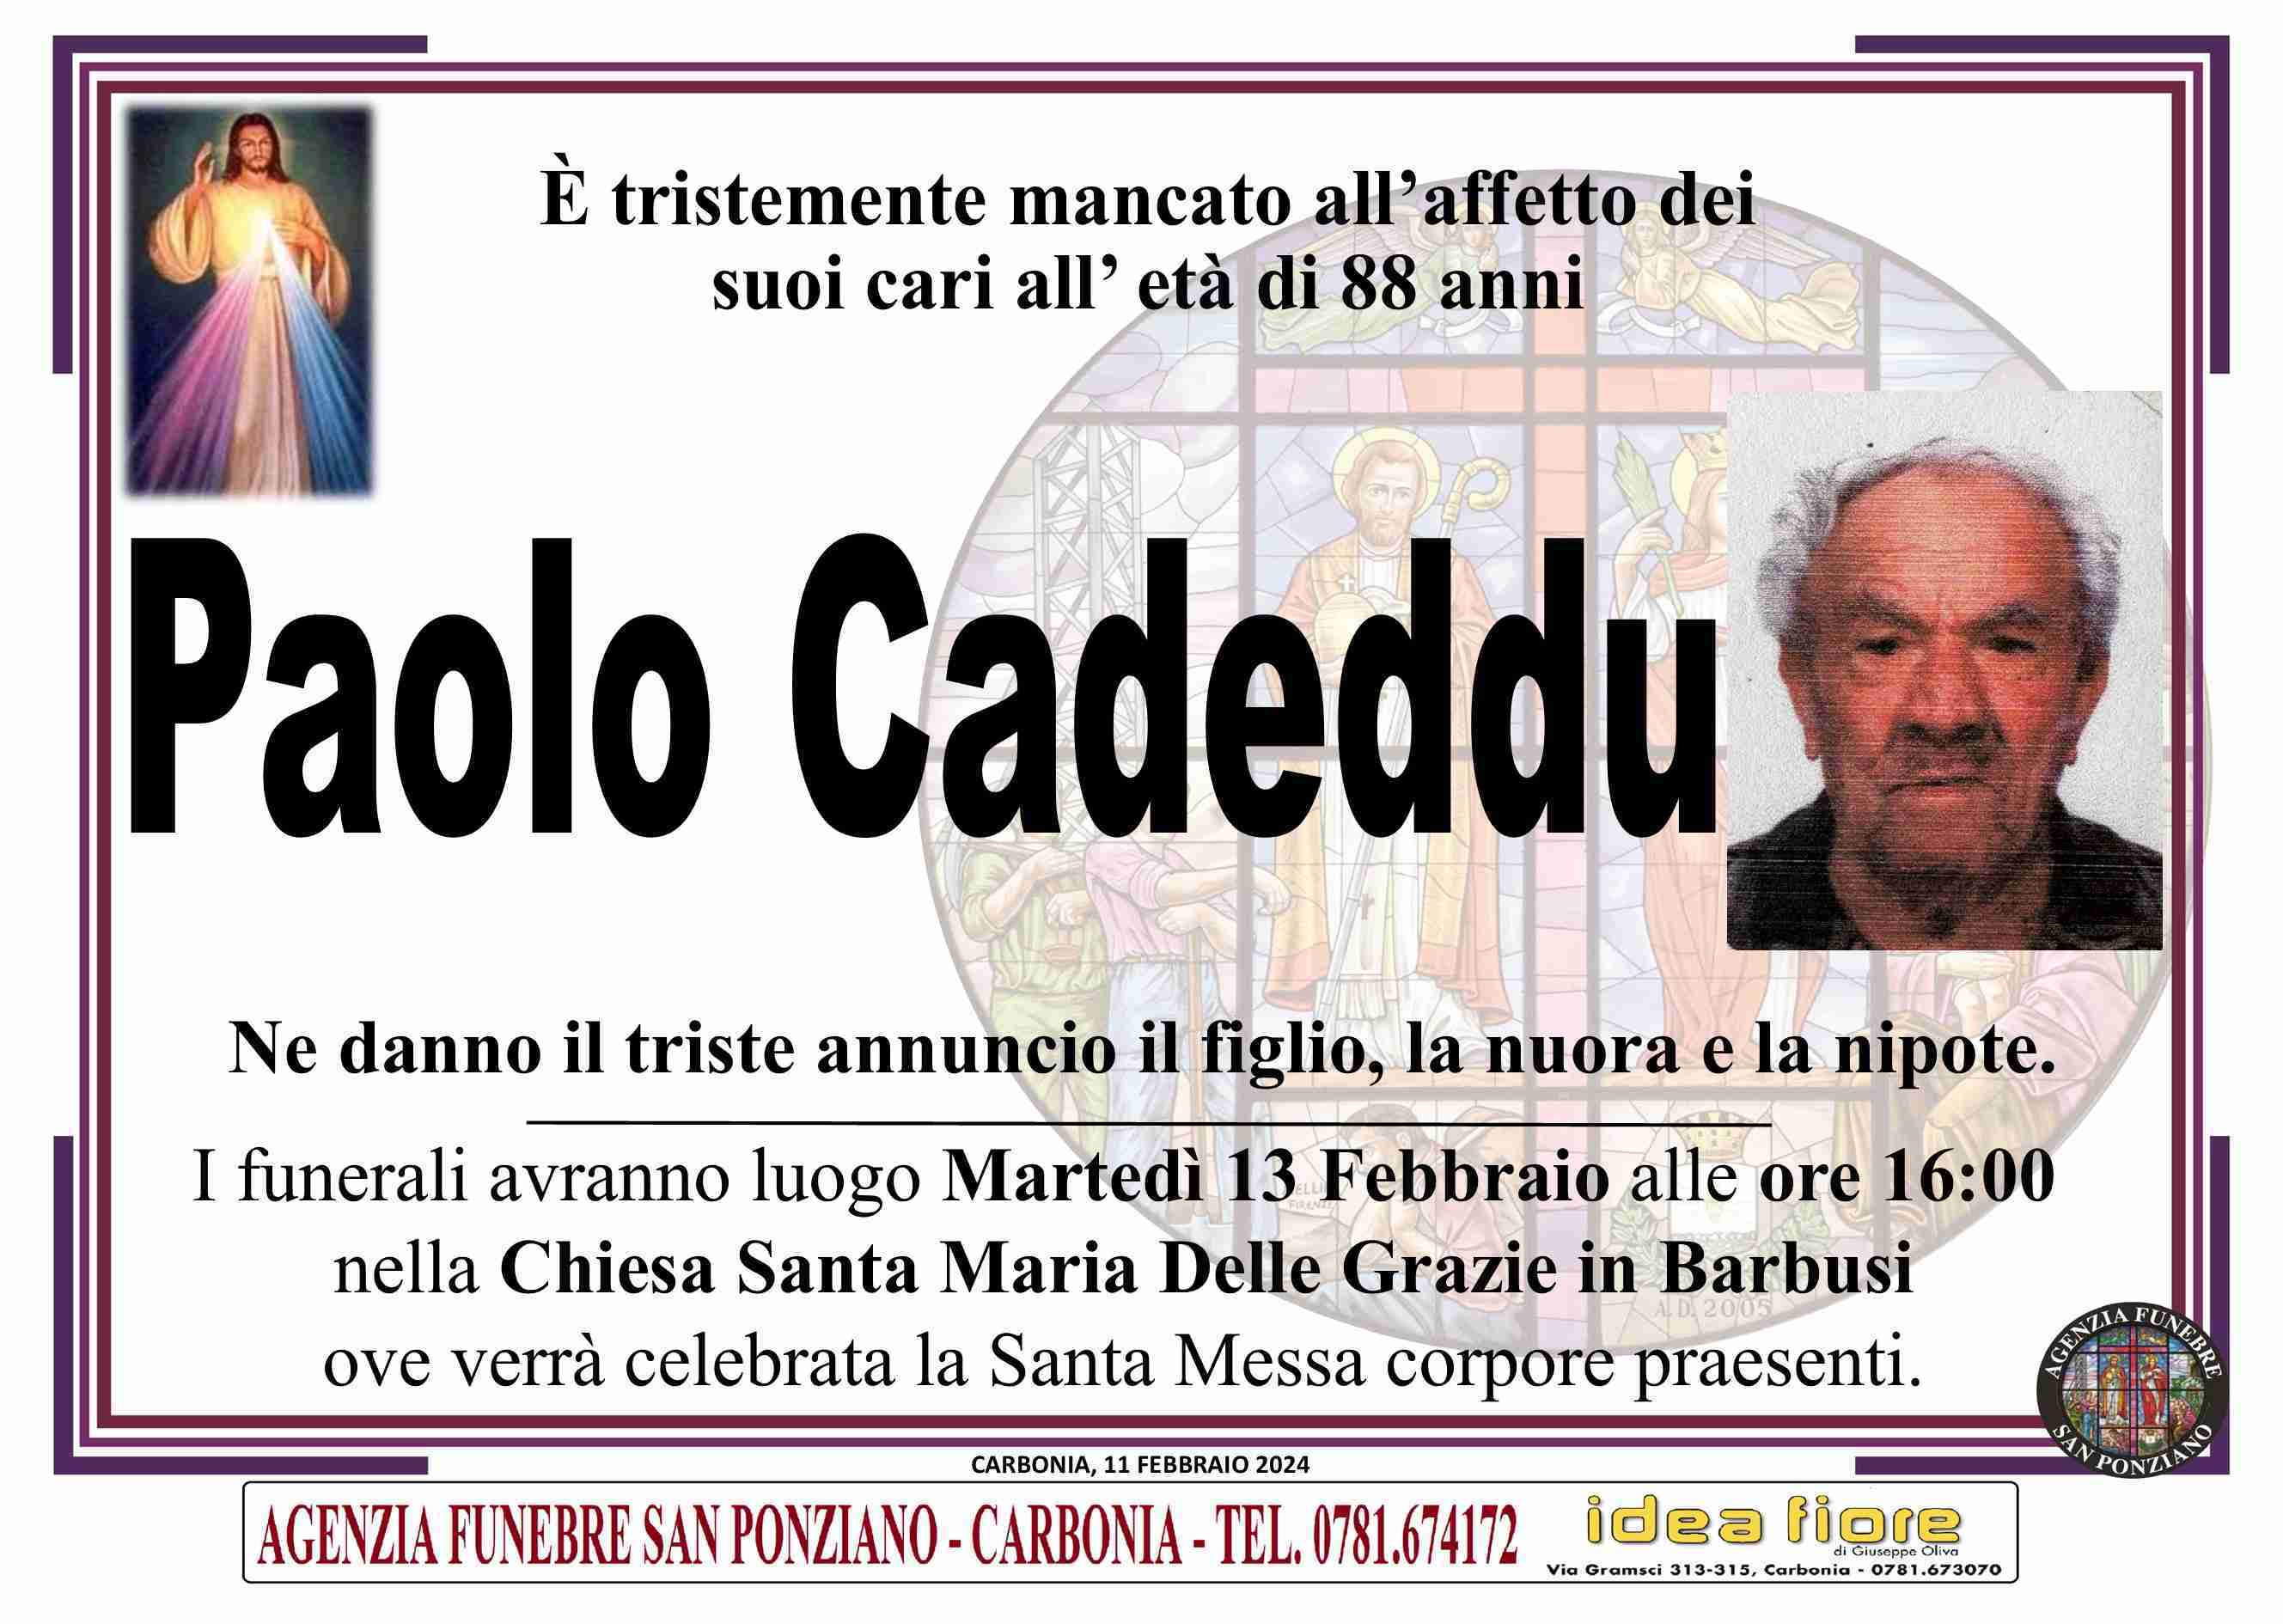 Paolo Cadeddu